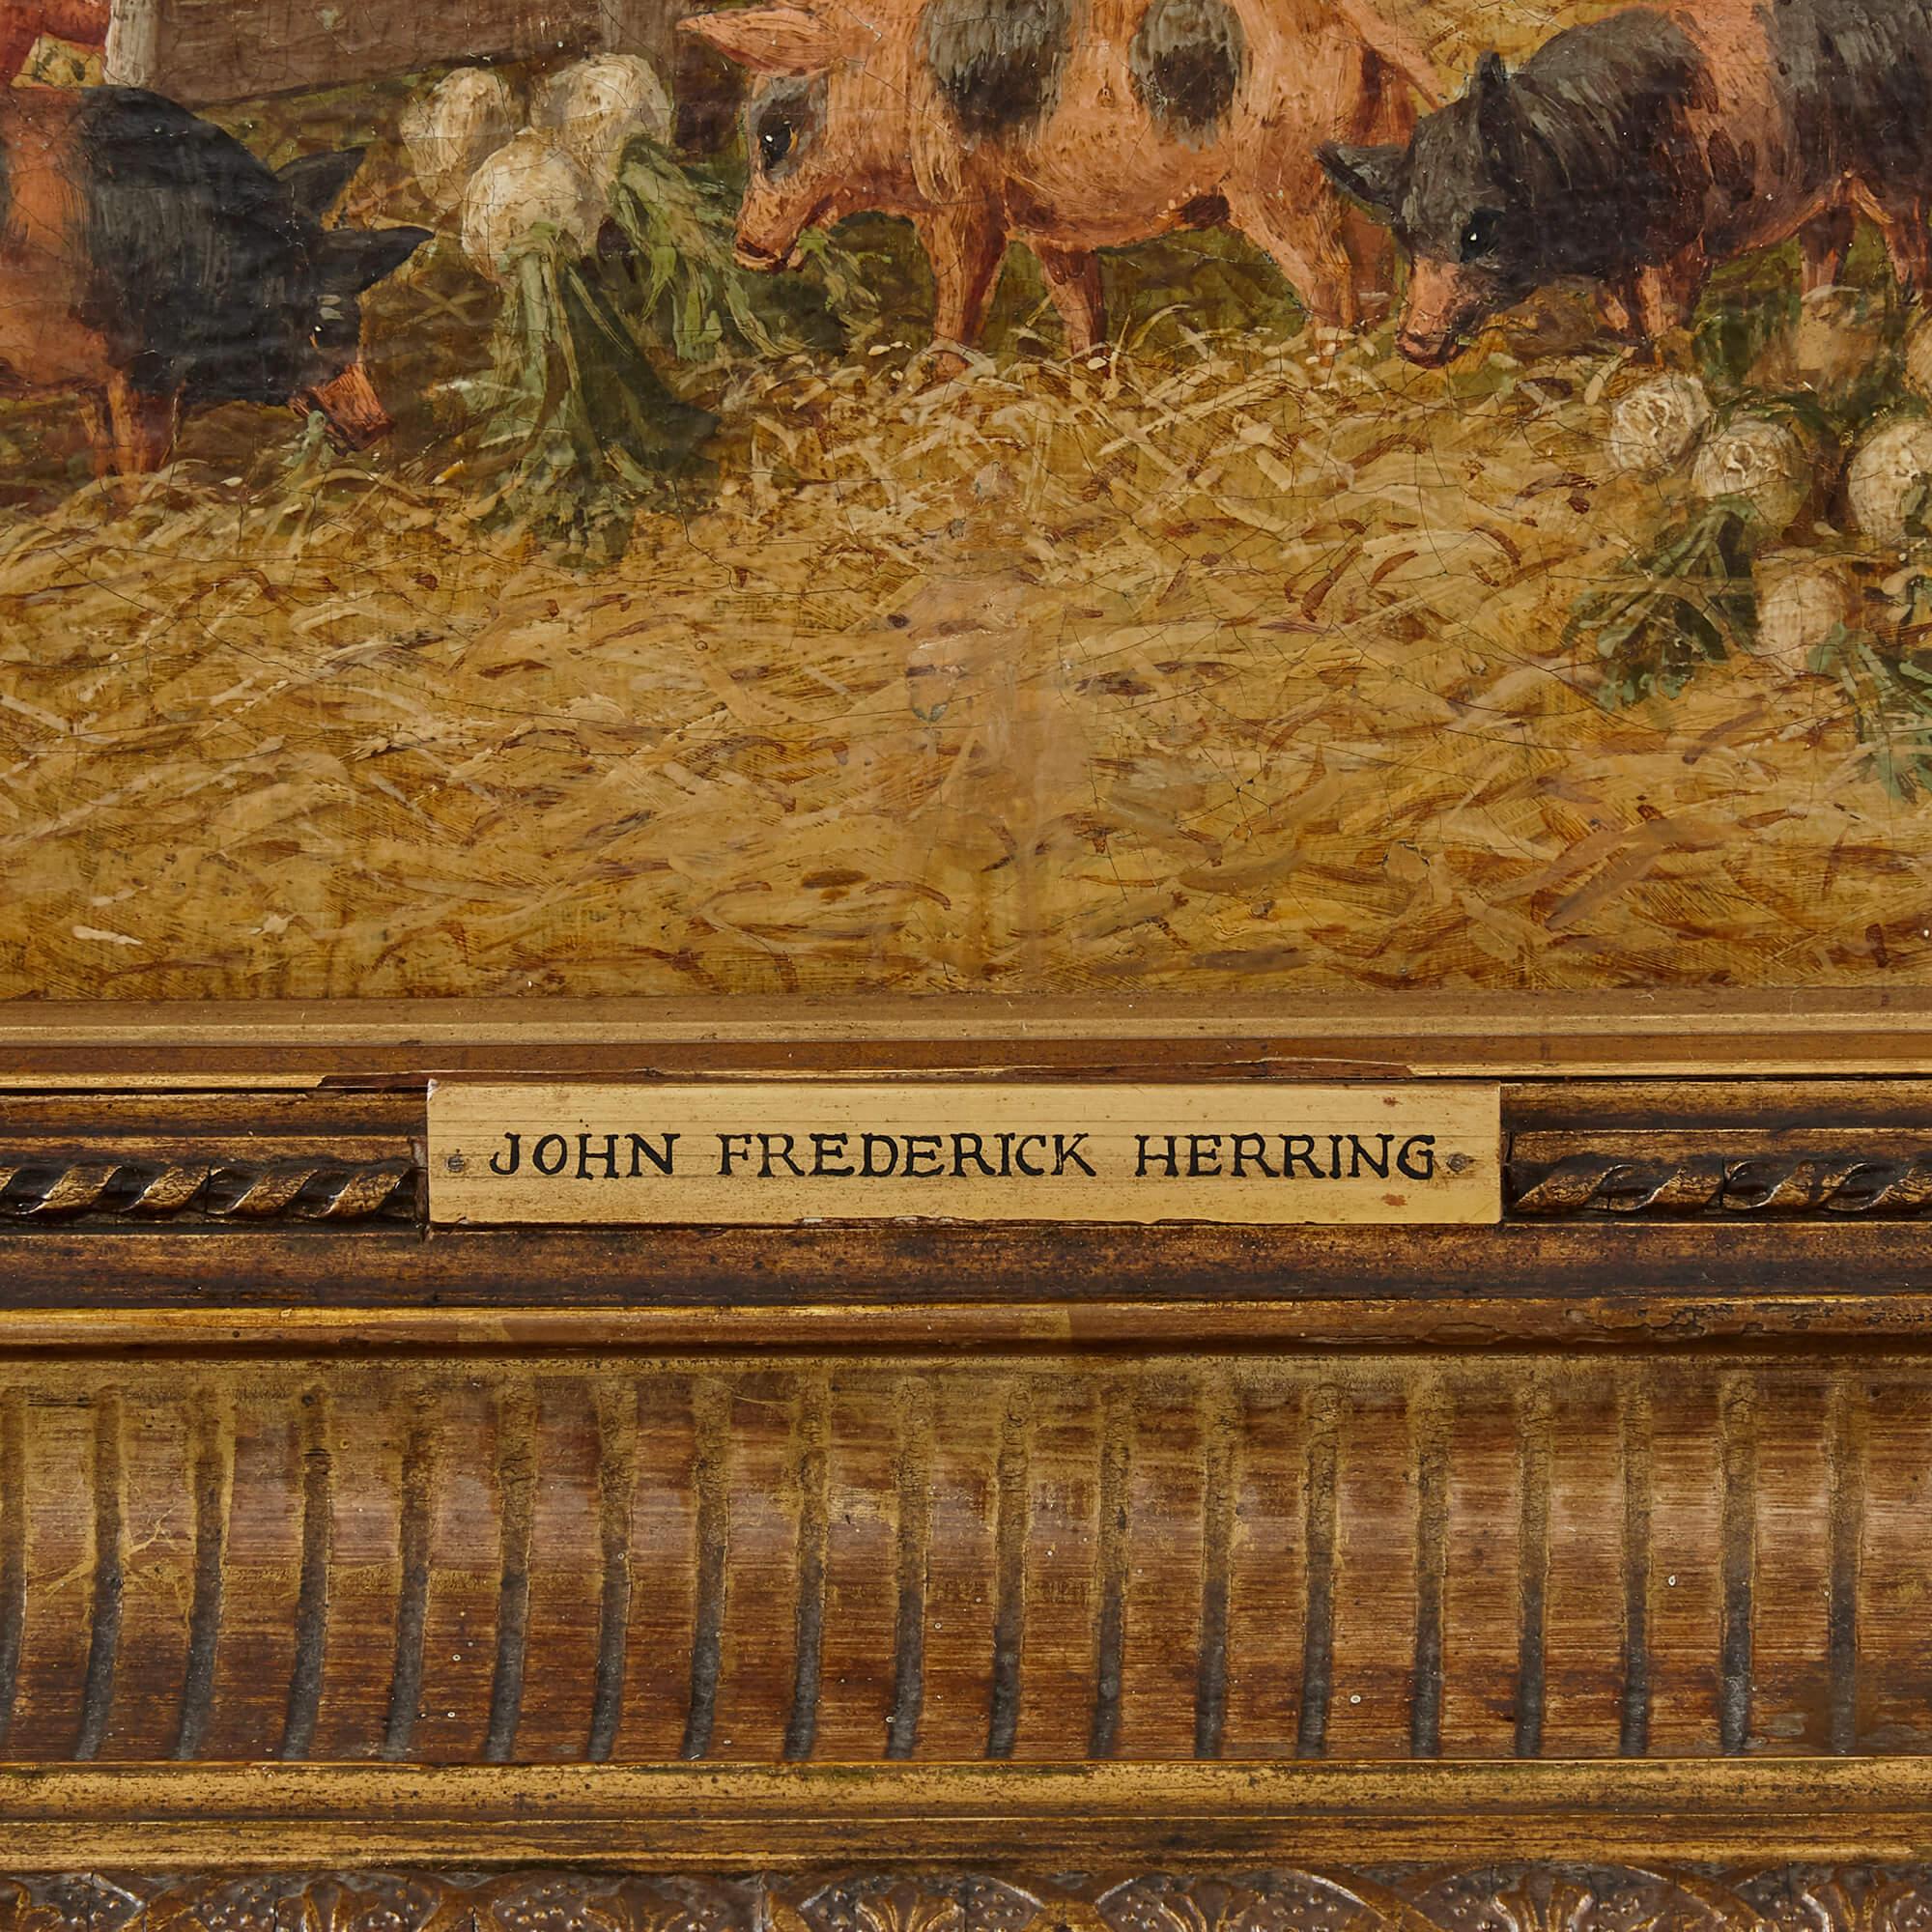 Peinture de chevaux et d'animaux de ferme par Herring le Jeune
Britannique, 19ème siècle
Cadre : Hauteur 83cm, largeur 97cm
Toile : Hauteur 64 cm, largeur 77 cm

Ce charmant tableau est l'œuvre de John Frederick Herring le Jeune, fils de John